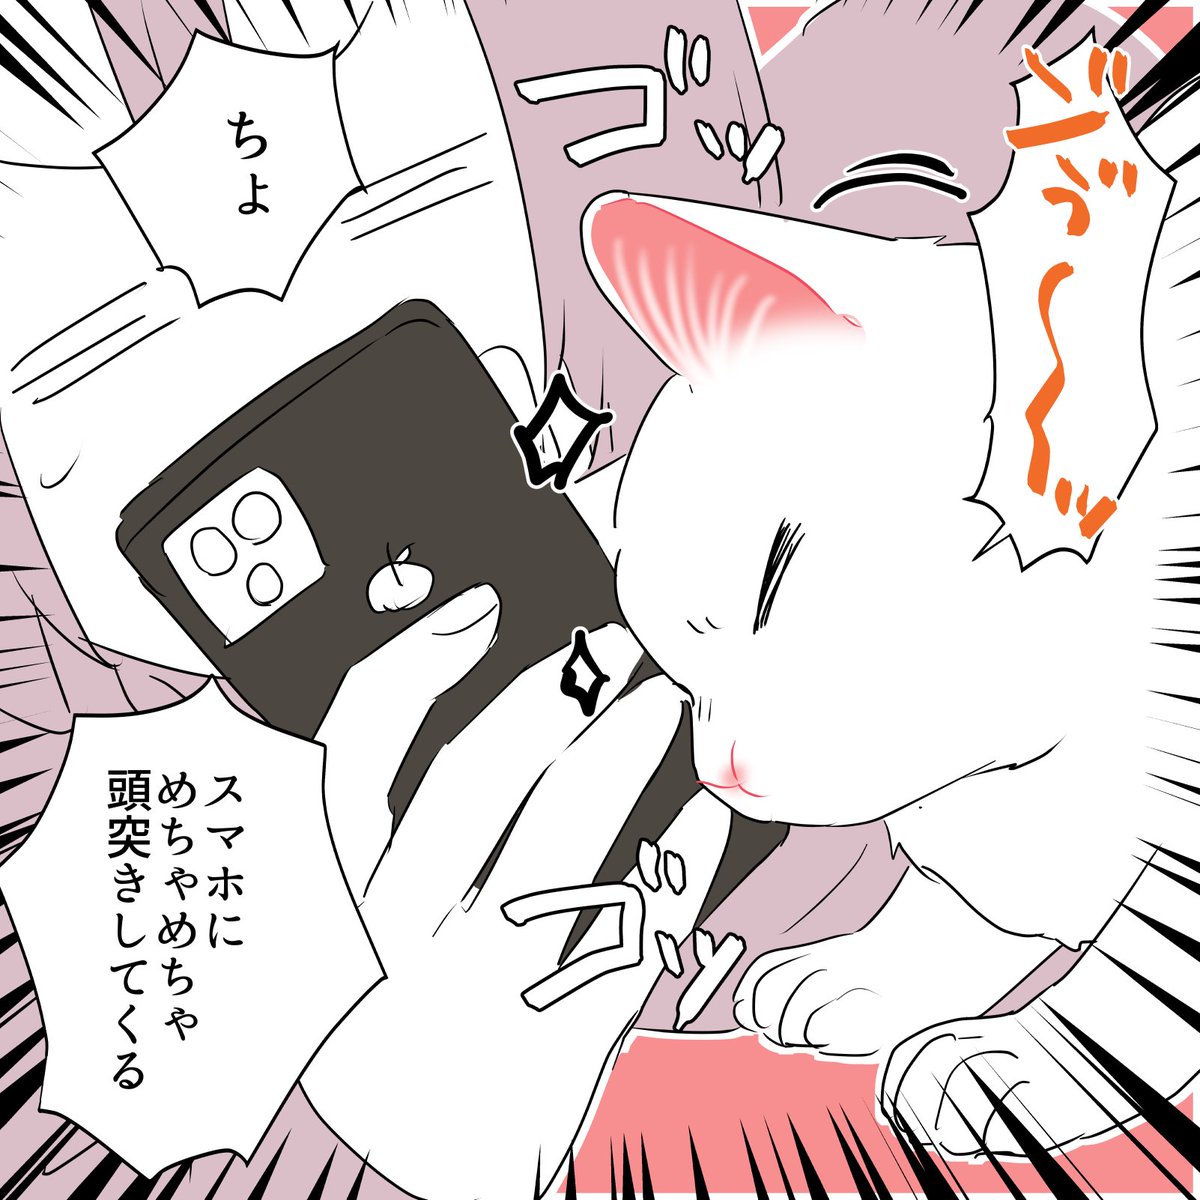 💥🤛強引に甘えてくる猫の話🐈😂 (2/2) #漫画が読めるハッシュタグ #愛されたがりの白猫ミコさん 強引な甘えんぼ白猫のエッセイコミックス発売中です👇 